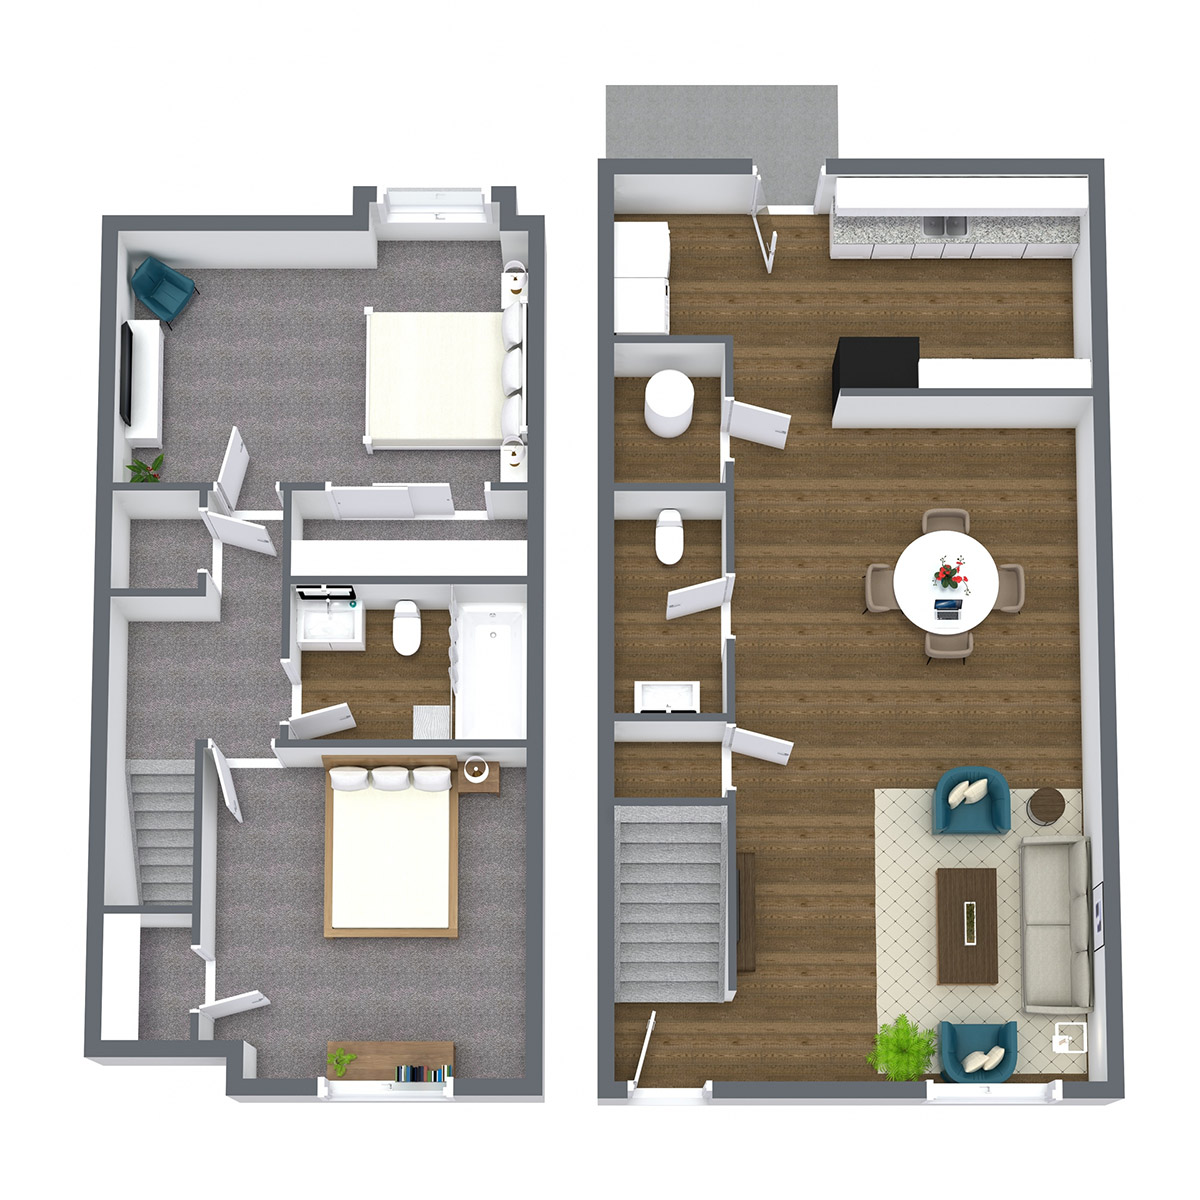 Prairie West - Floorplan - 2 Bedroom Townhome | Upgraded